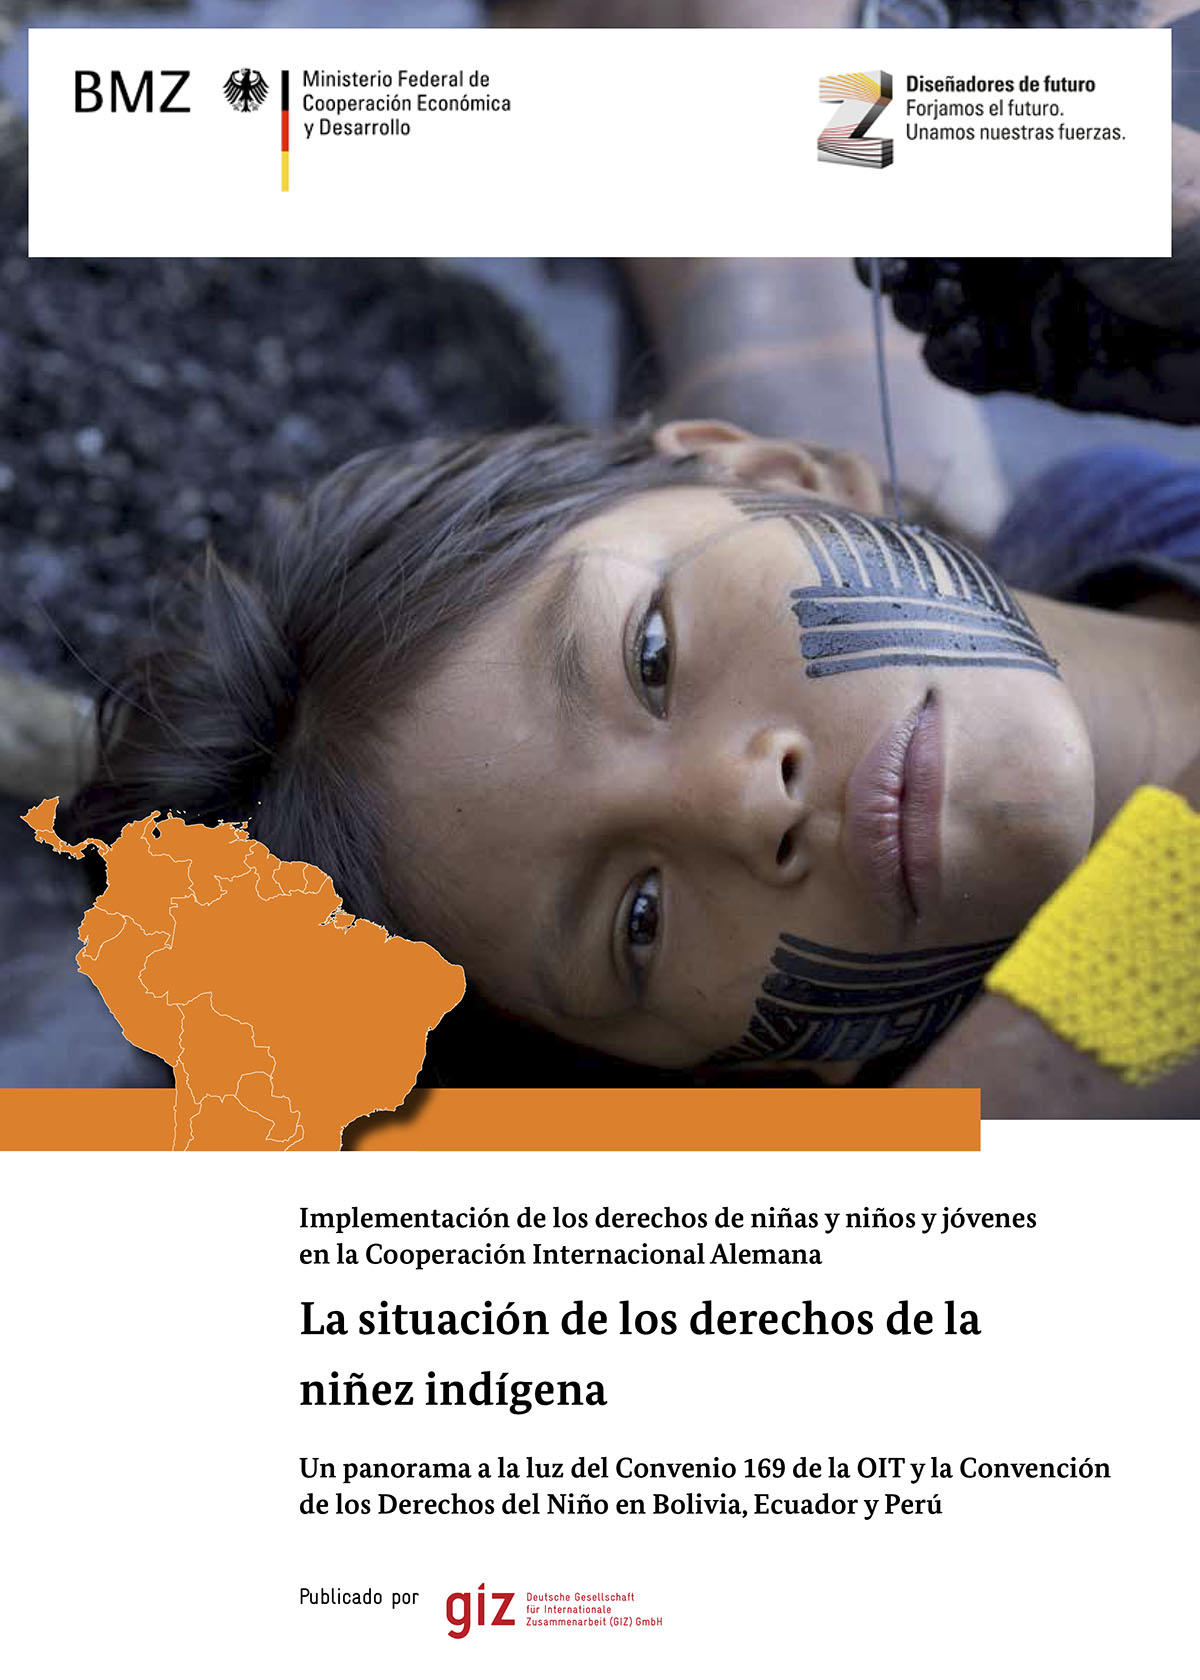 Égido Zurita, J. Iván <br>La situación de los derechos de la niñez indígena. Un panorama a la luz del Convenio 169 de la OIT y la Convención de los Derechos del Niño en Bolivia, Ecuador y Perú<br/>Eschborn, Alemania: GIZ : ProIndígena. 2014. 48 páginas 